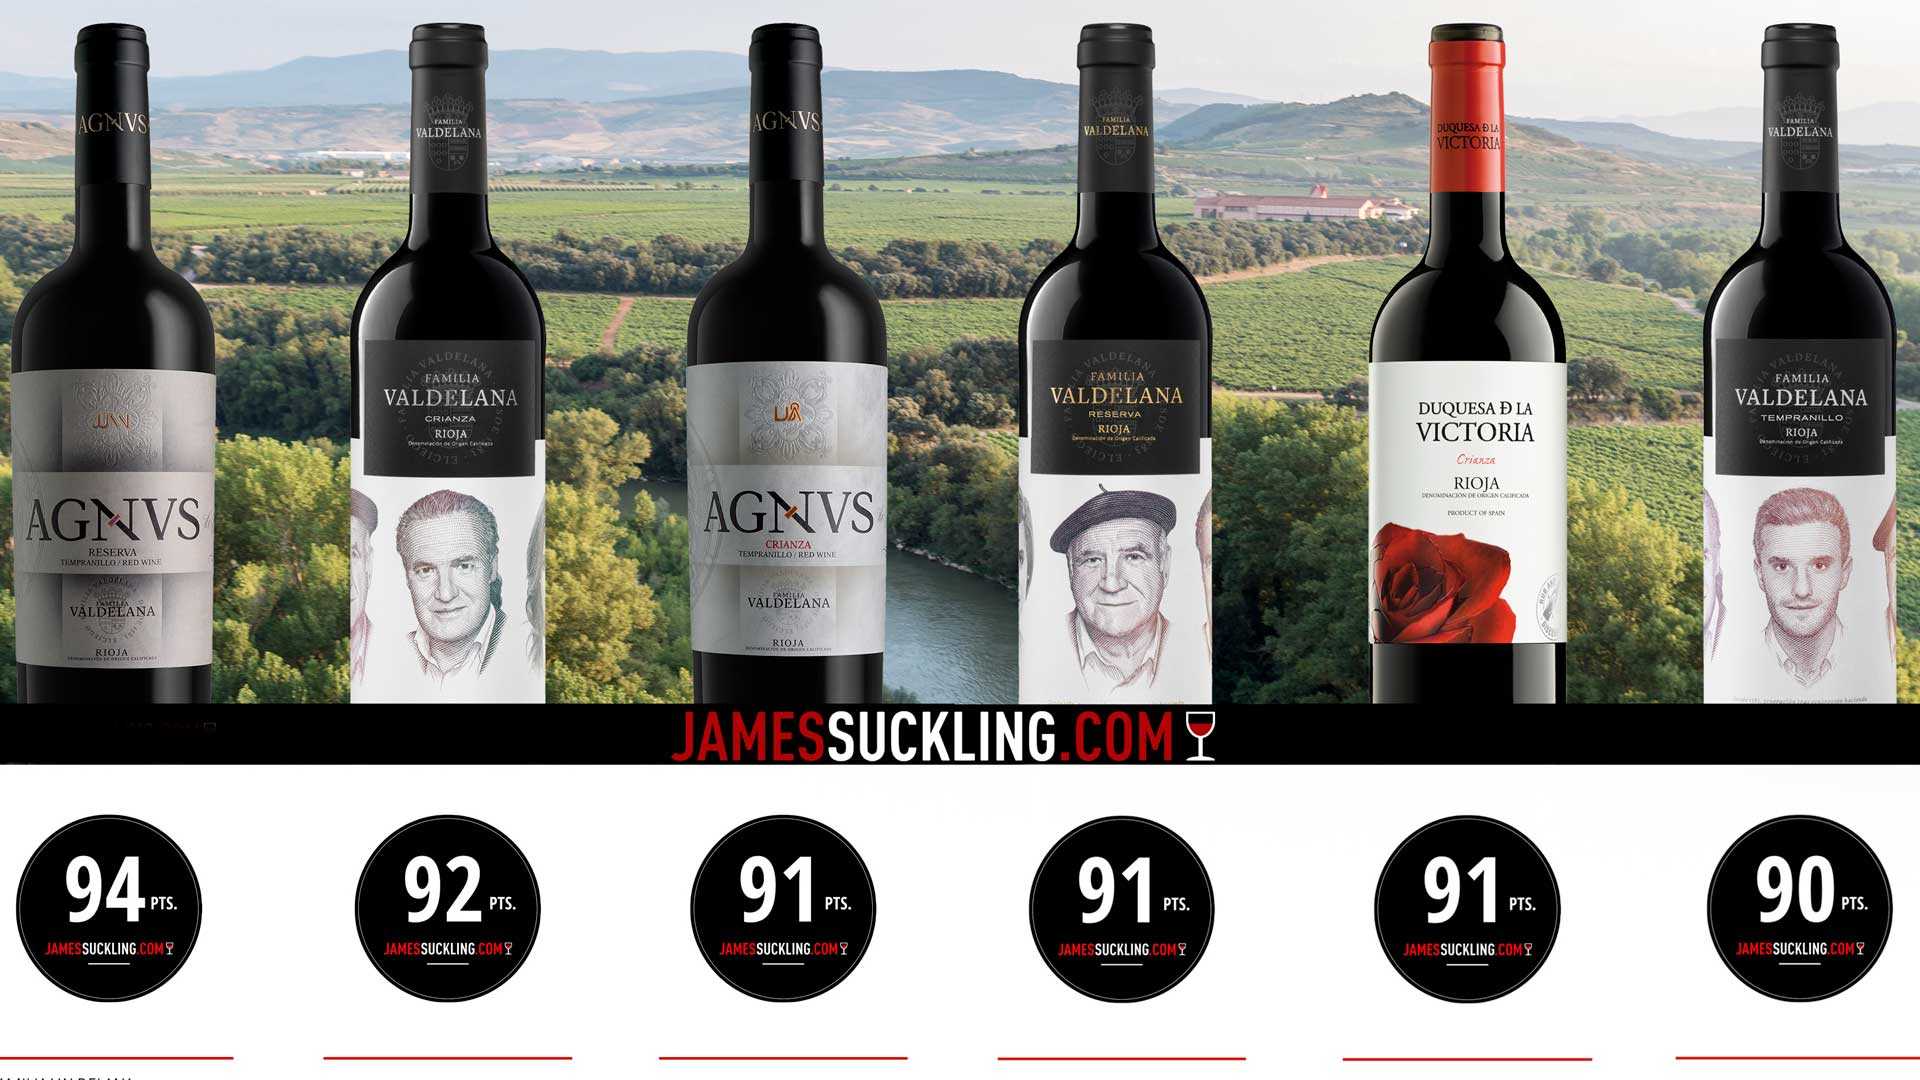 Джеймс саклинг: «вы можете смело давать вину 90 баллов, если вам хочется допить этот бокал» | simple wine news